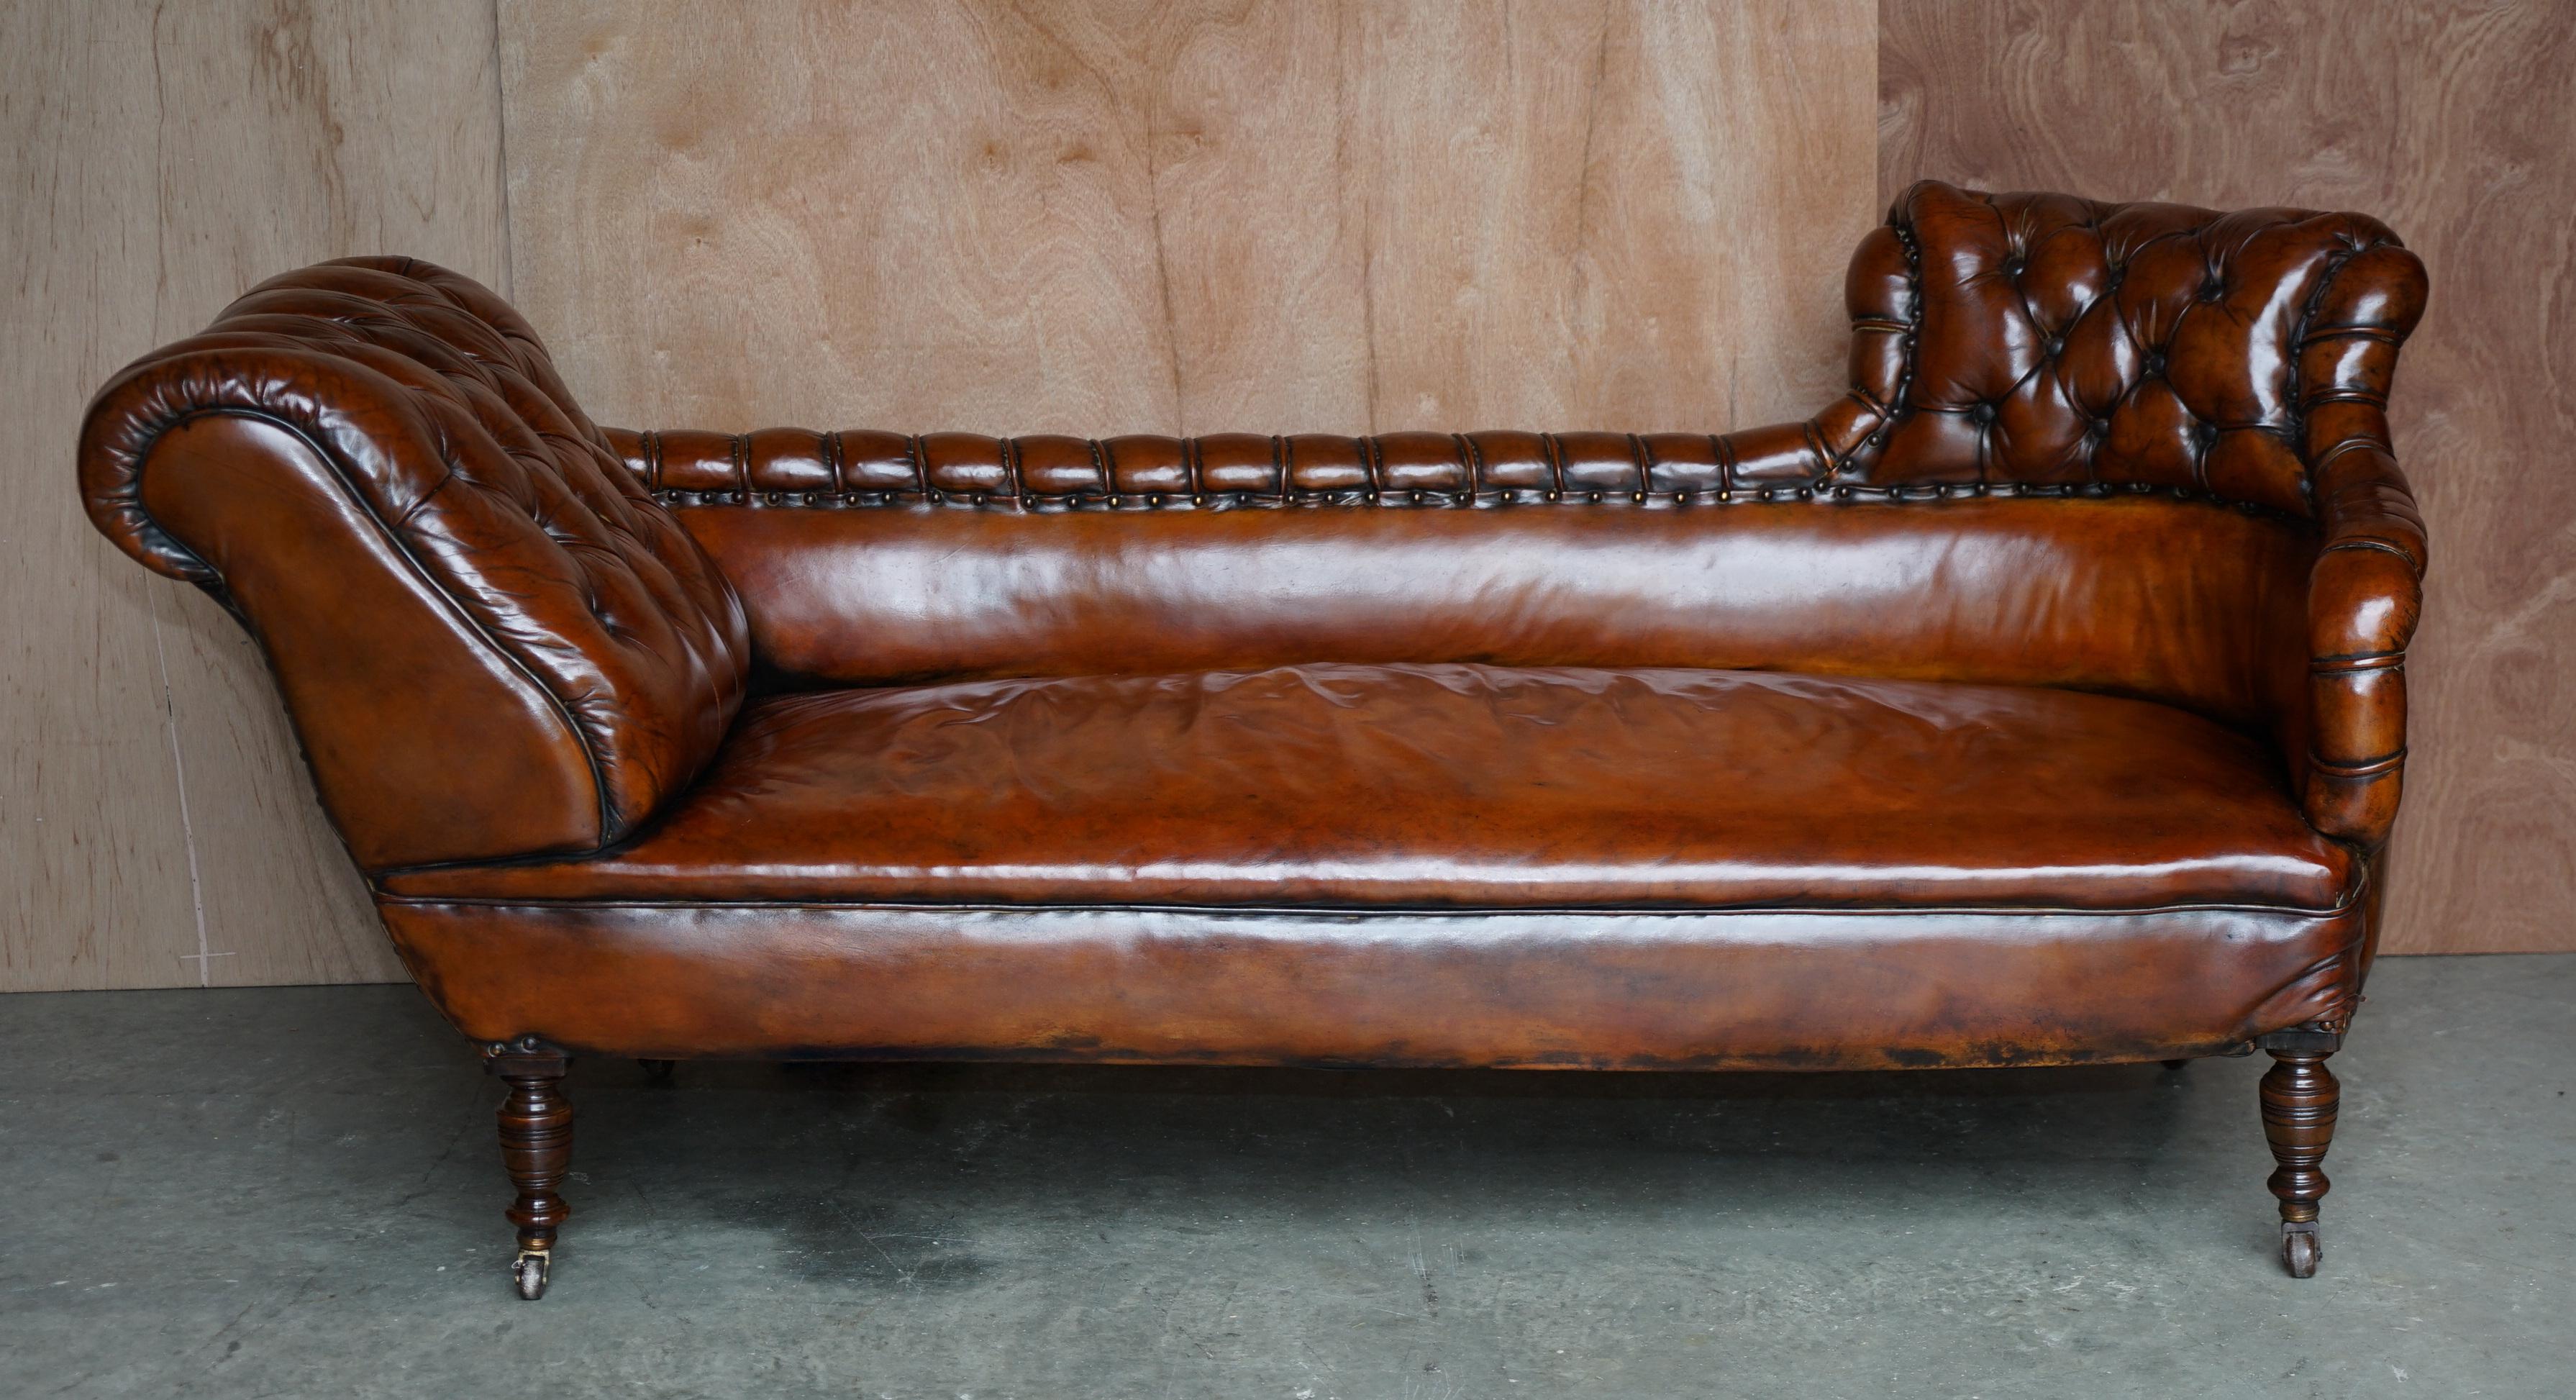 Wir freuen uns, dieses sehr seltene, vollständig restaurierte Chesterfield Tufted Sofa Chaise Lounge in whiskeybraunem Leder anbieten zu können.

Ein sehr seltenes Beispiel, ich habe nie gesehen, diese Rückseite vor, es ist ein englisches Stück,